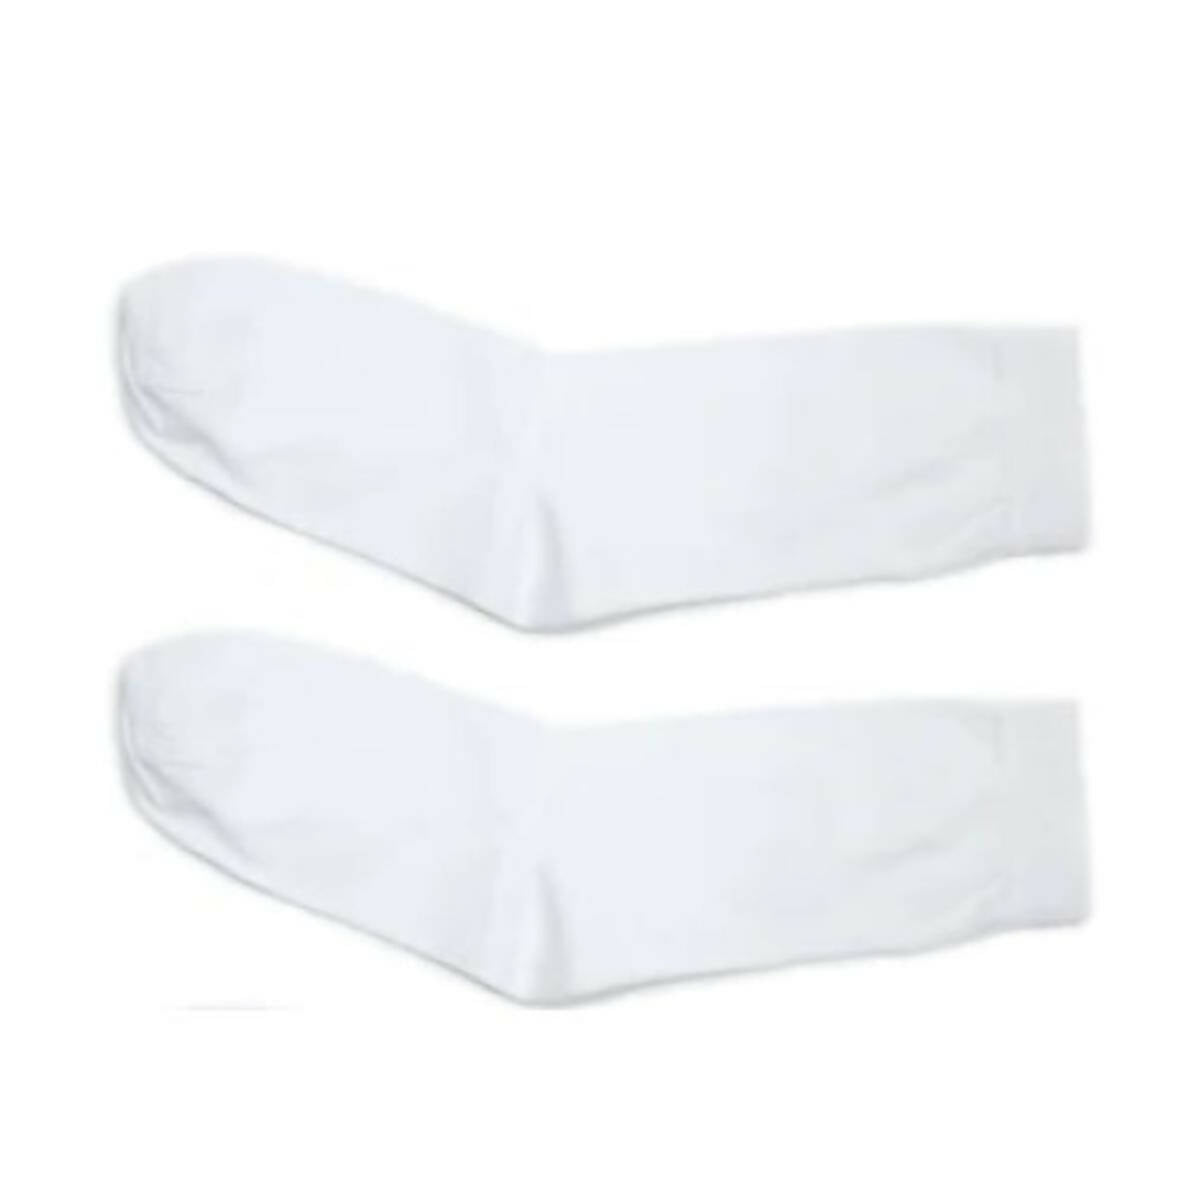 Pack of 2 White School Socks - 02 Pair of White Cotton Socks for Boys & Girls